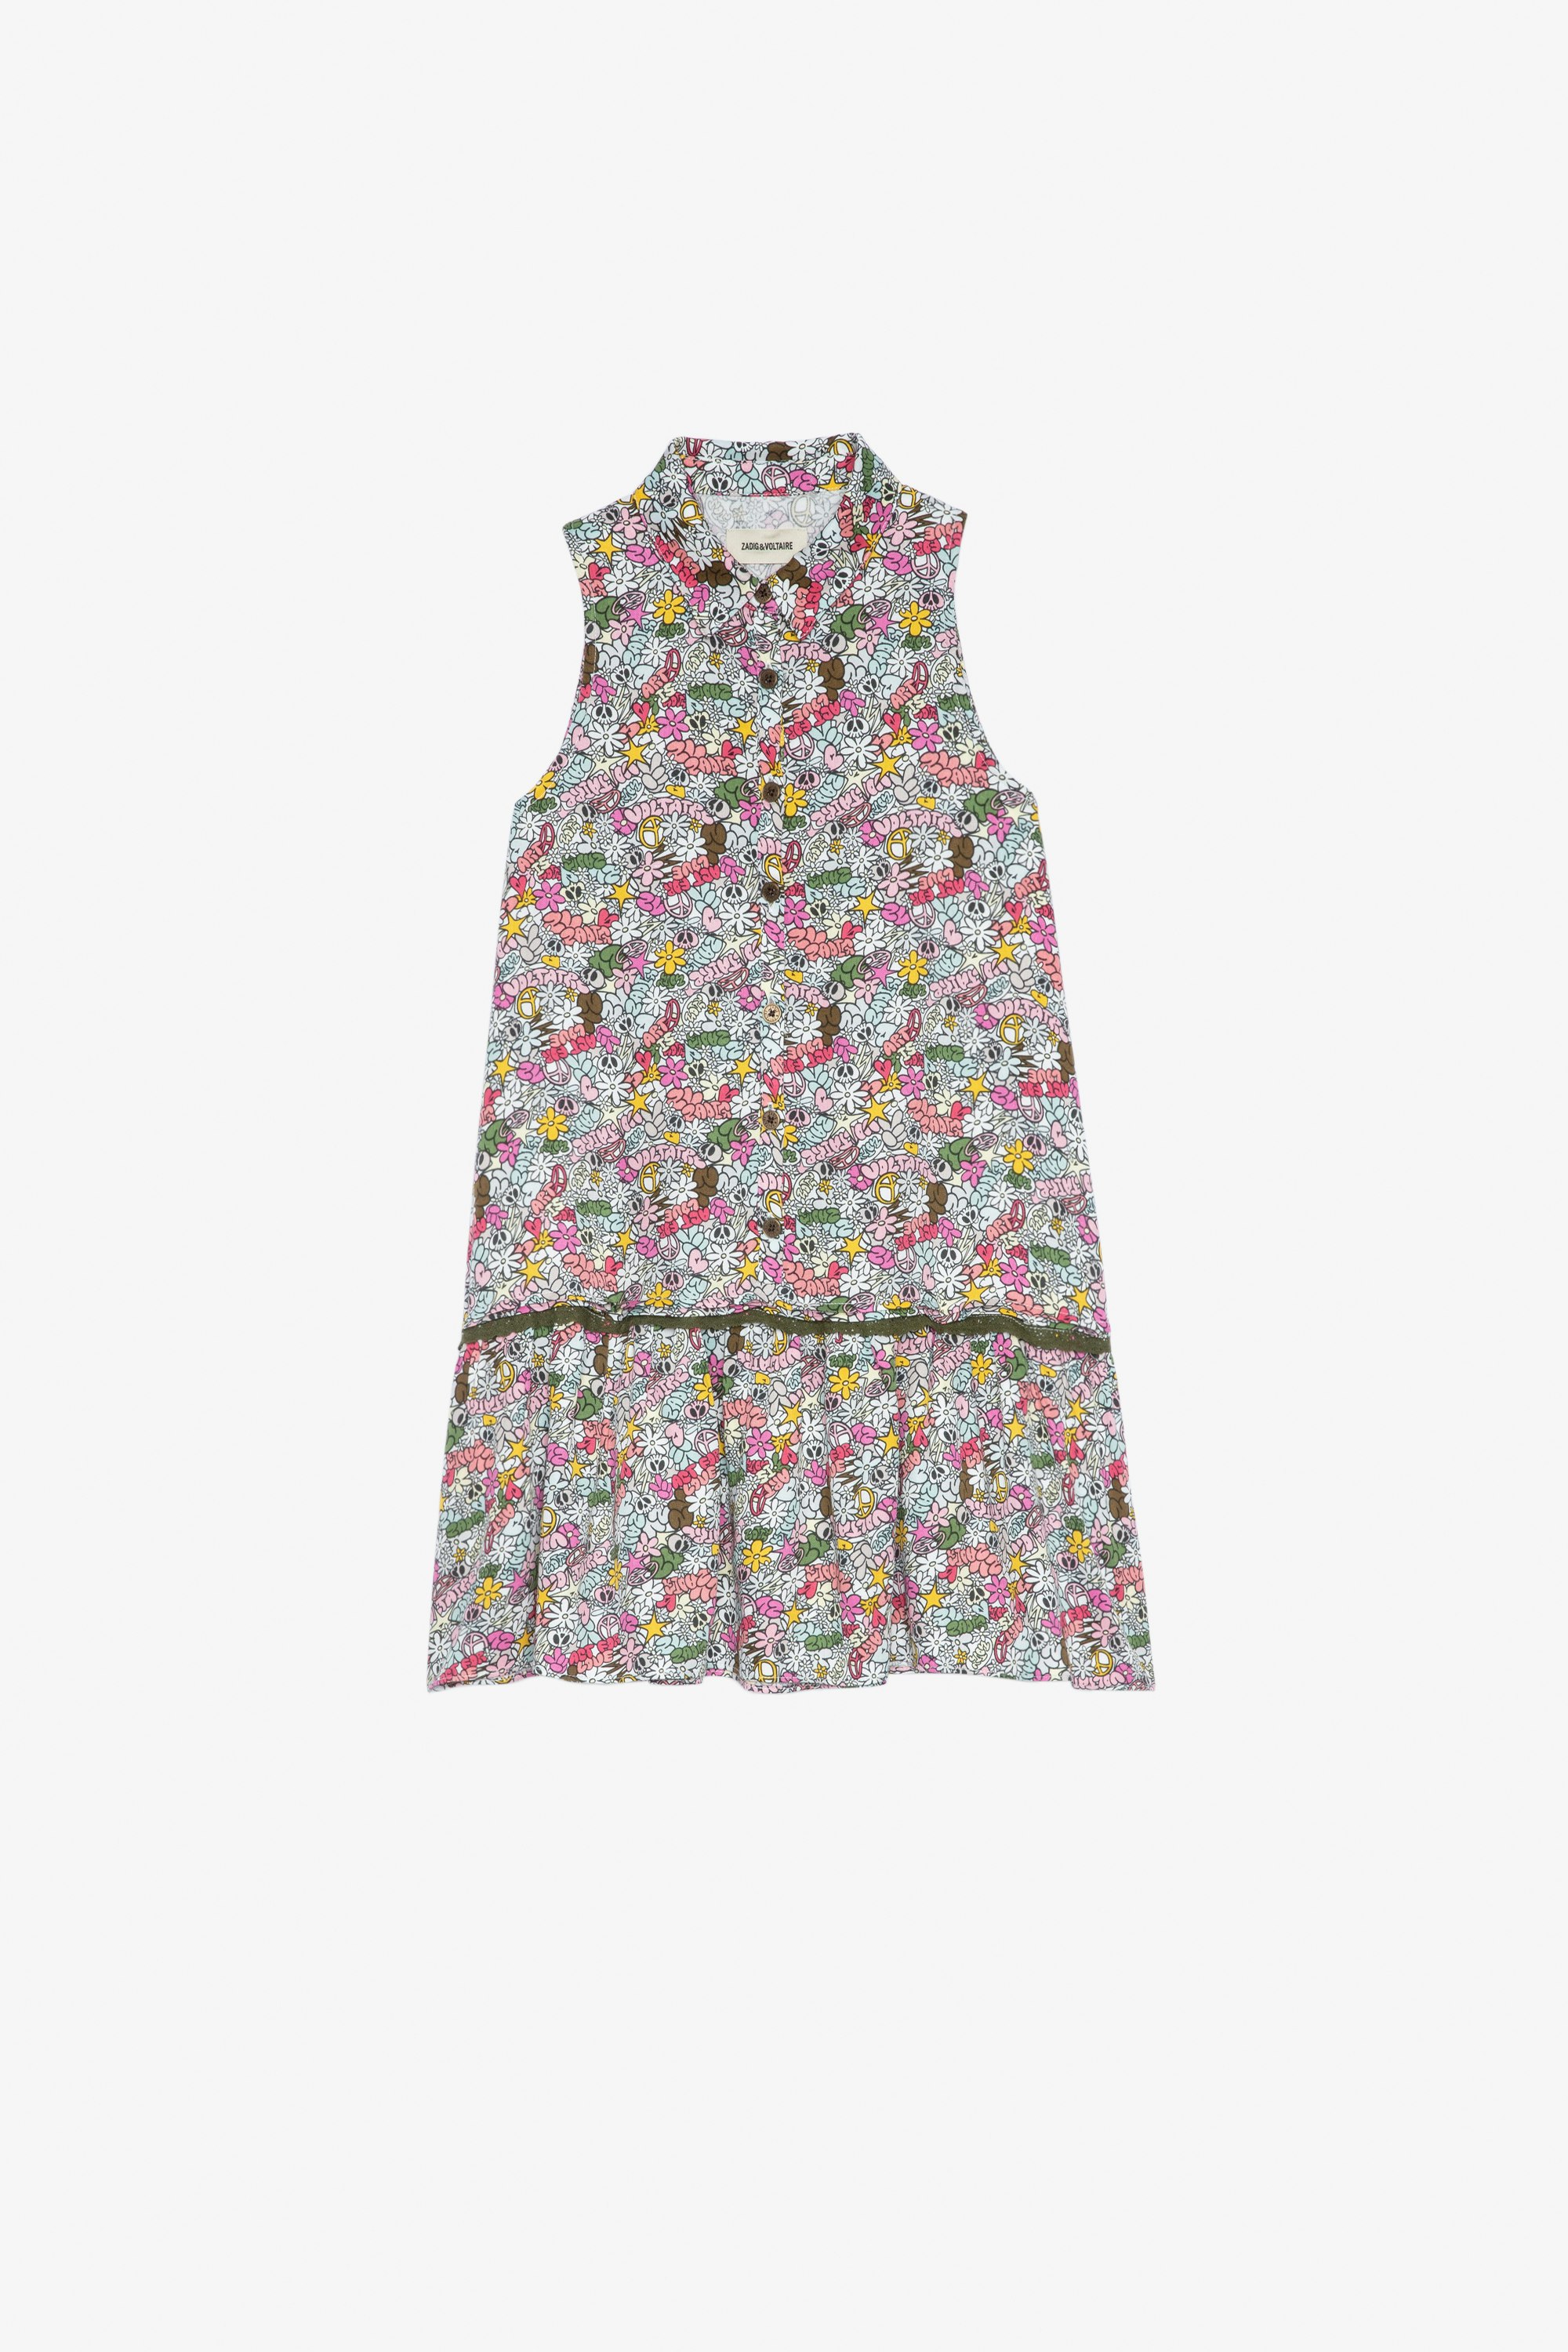 Karo Kids’ Dress Kids’ Core Cho print dress with a lace band